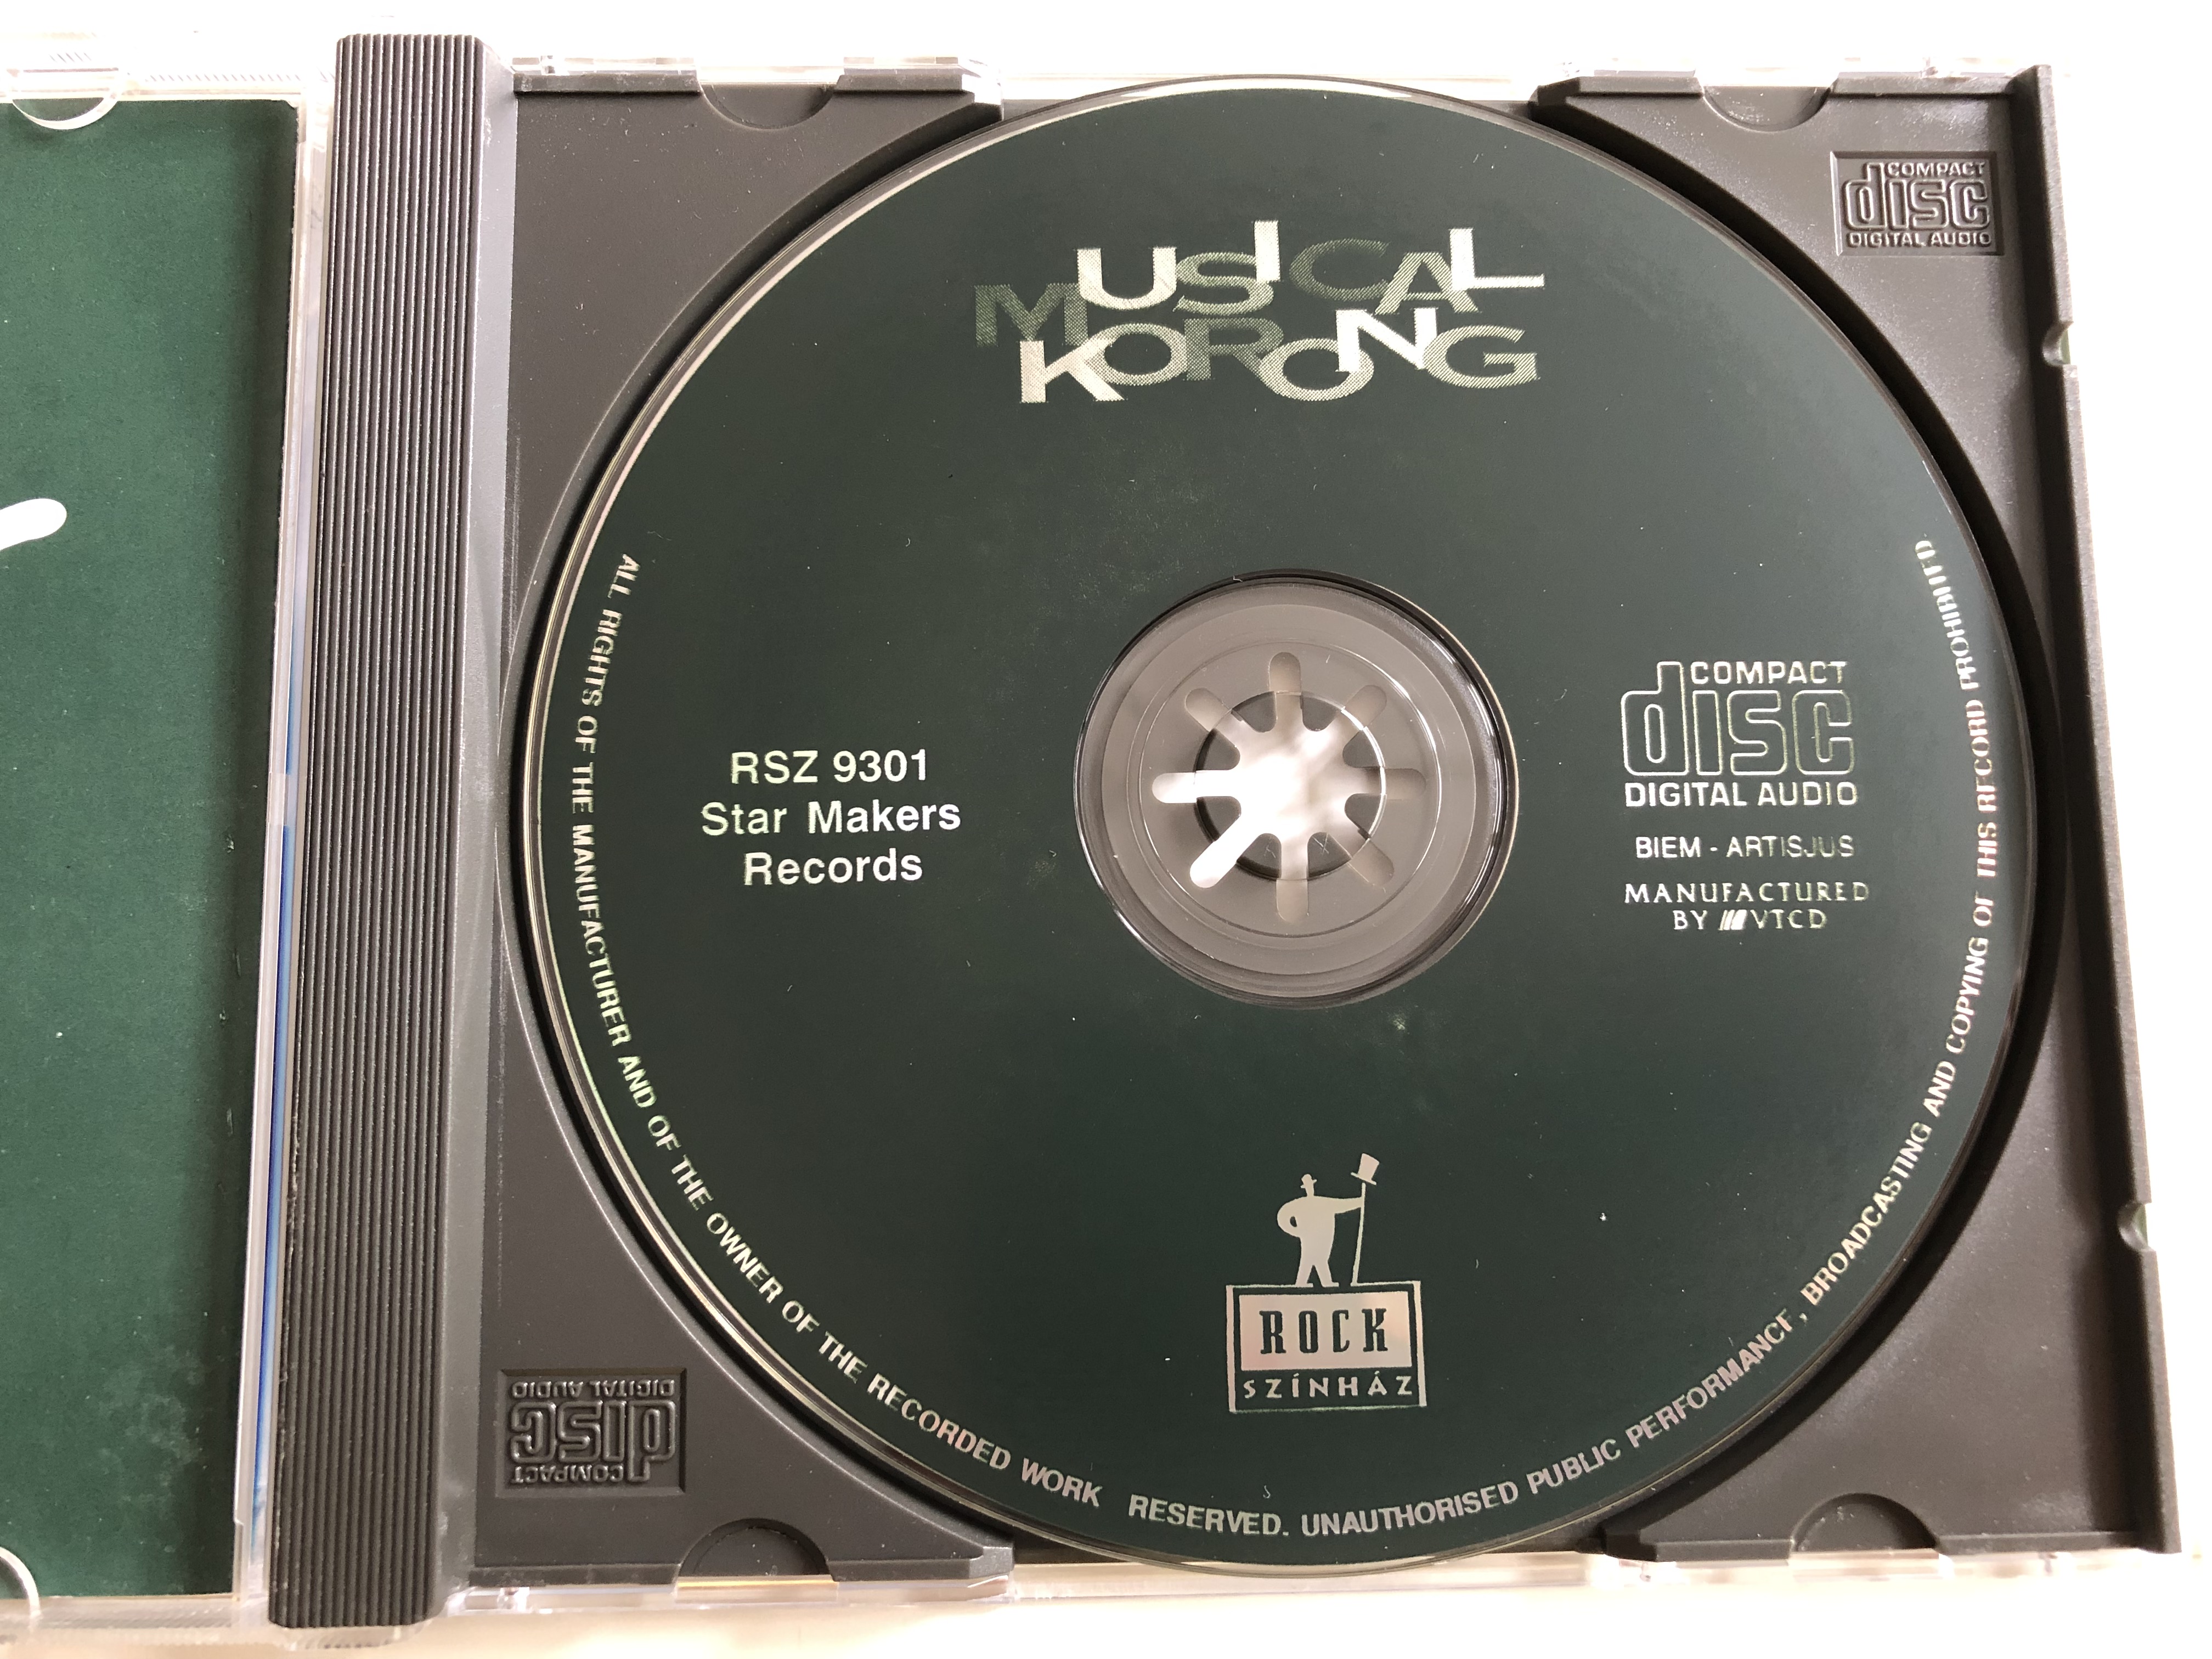 musical-korong-dalok-vil-gh-r-zen-s-produkci-kb-l-j-zus-krisztus-szuperszt-r-evita-szt-rcsin-l-k-sakk-miss-saigon-hair-audio-cd-1993-rock-sz-nh-z-rsz9301-star-makers-records-6-.jpg